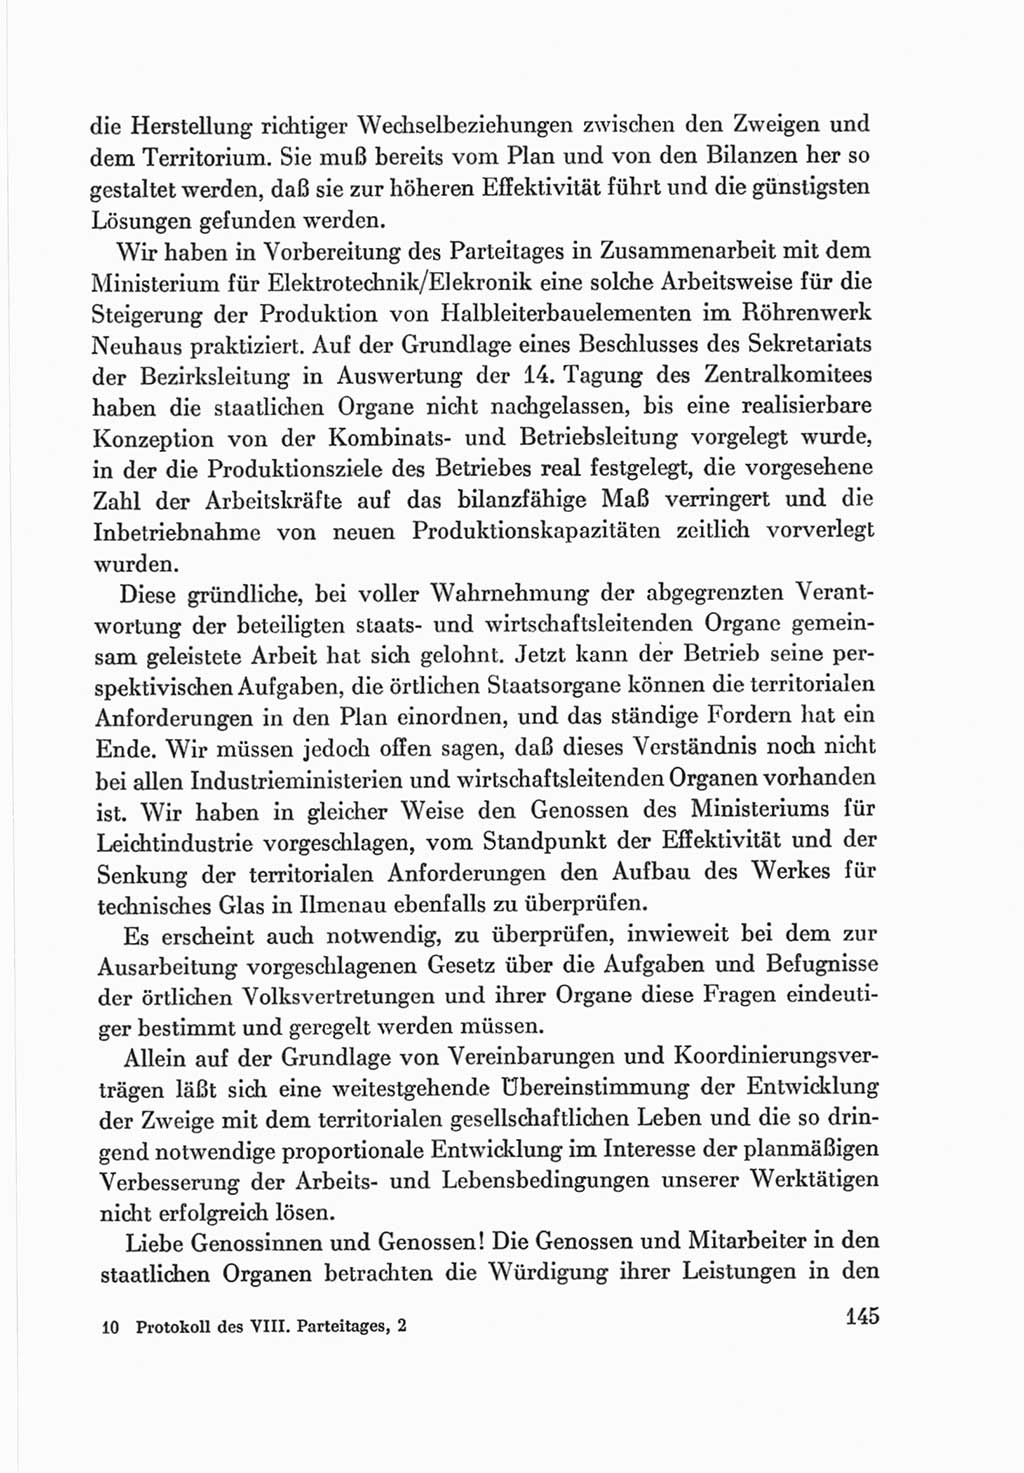 Protokoll der Verhandlungen des Ⅷ. Parteitages der Sozialistischen Einheitspartei Deutschlands (SED) [Deutsche Demokratische Republik (DDR)] 1971, Band 2, Seite 145 (Prot. Verh. Ⅷ. PT SED DDR 1971, Bd. 2, S. 145)